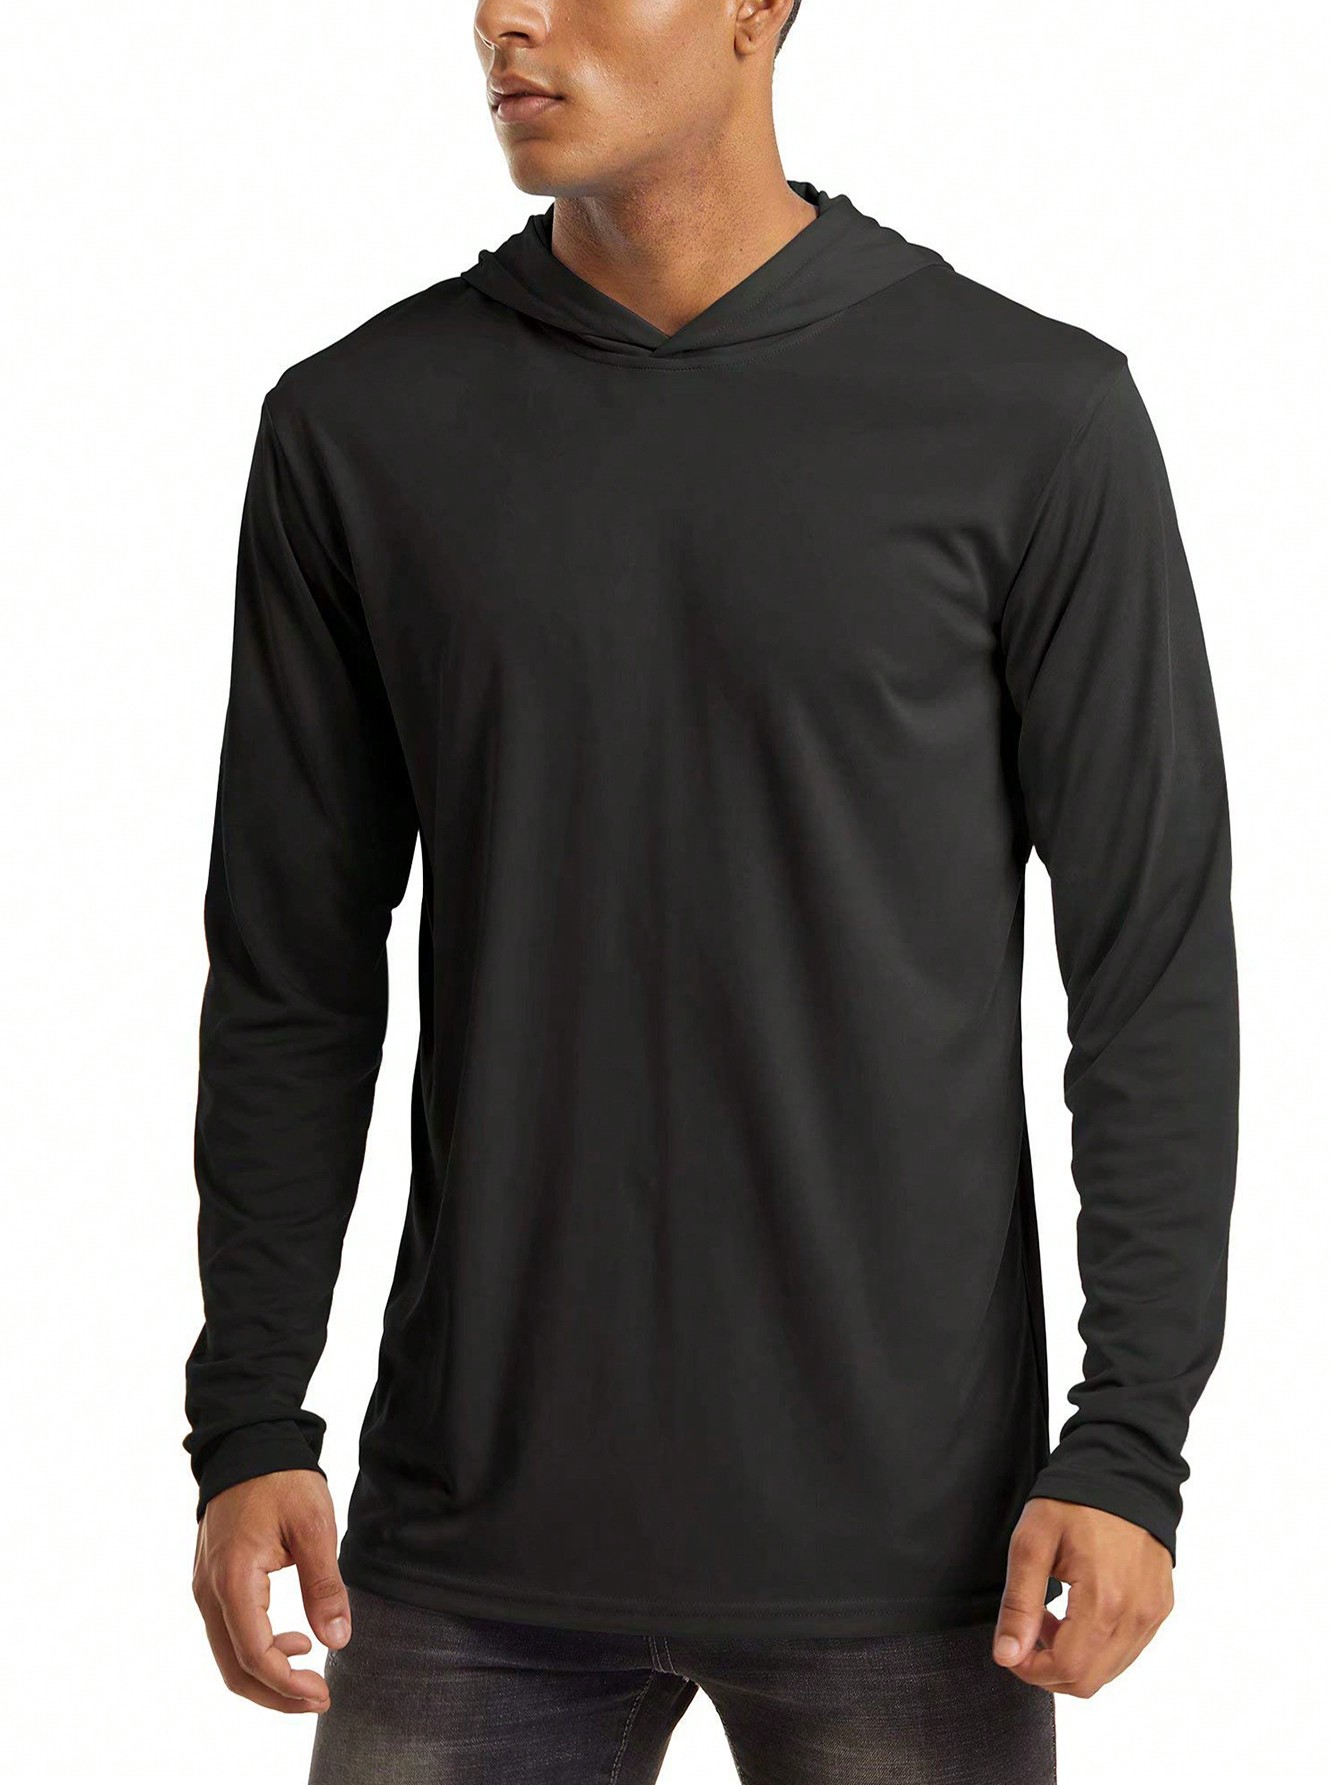 NASBING Мужская быстросохнущая спортивная футболка с капюшоном, черный